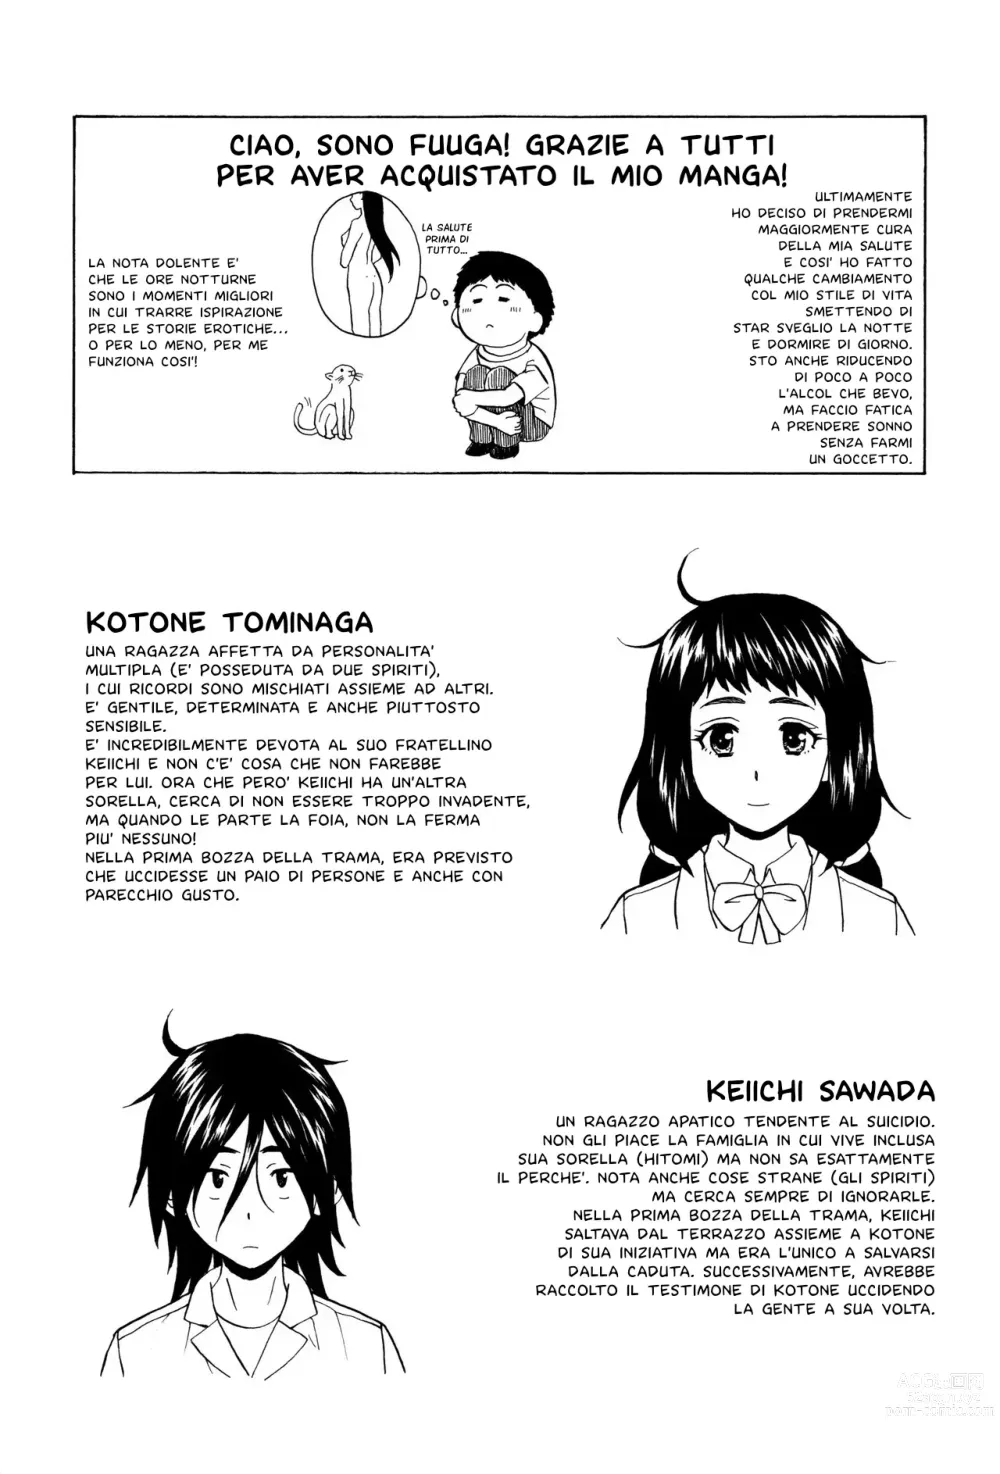 Page 209 of manga Segreti, Suicidi e Sorelle (decensored)